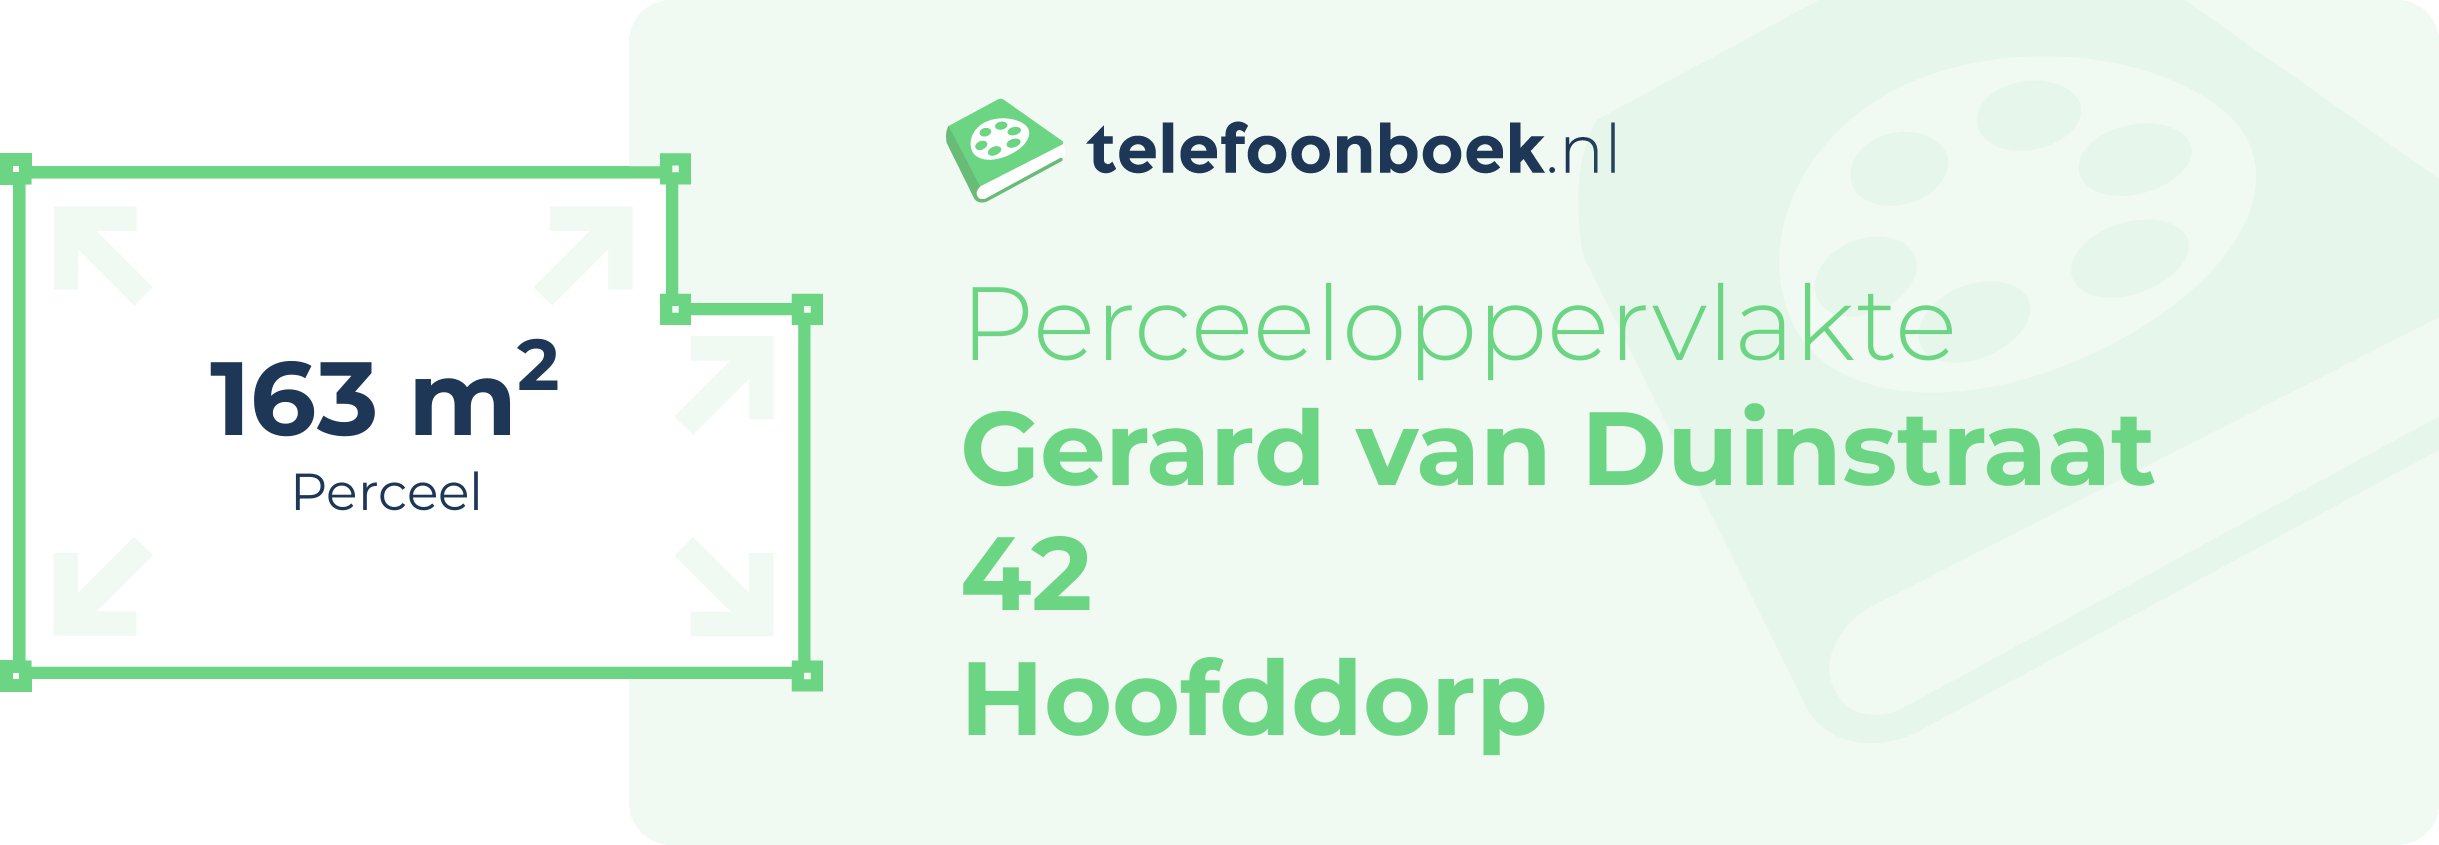 Perceeloppervlakte Gerard Van Duinstraat 42 Hoofddorp